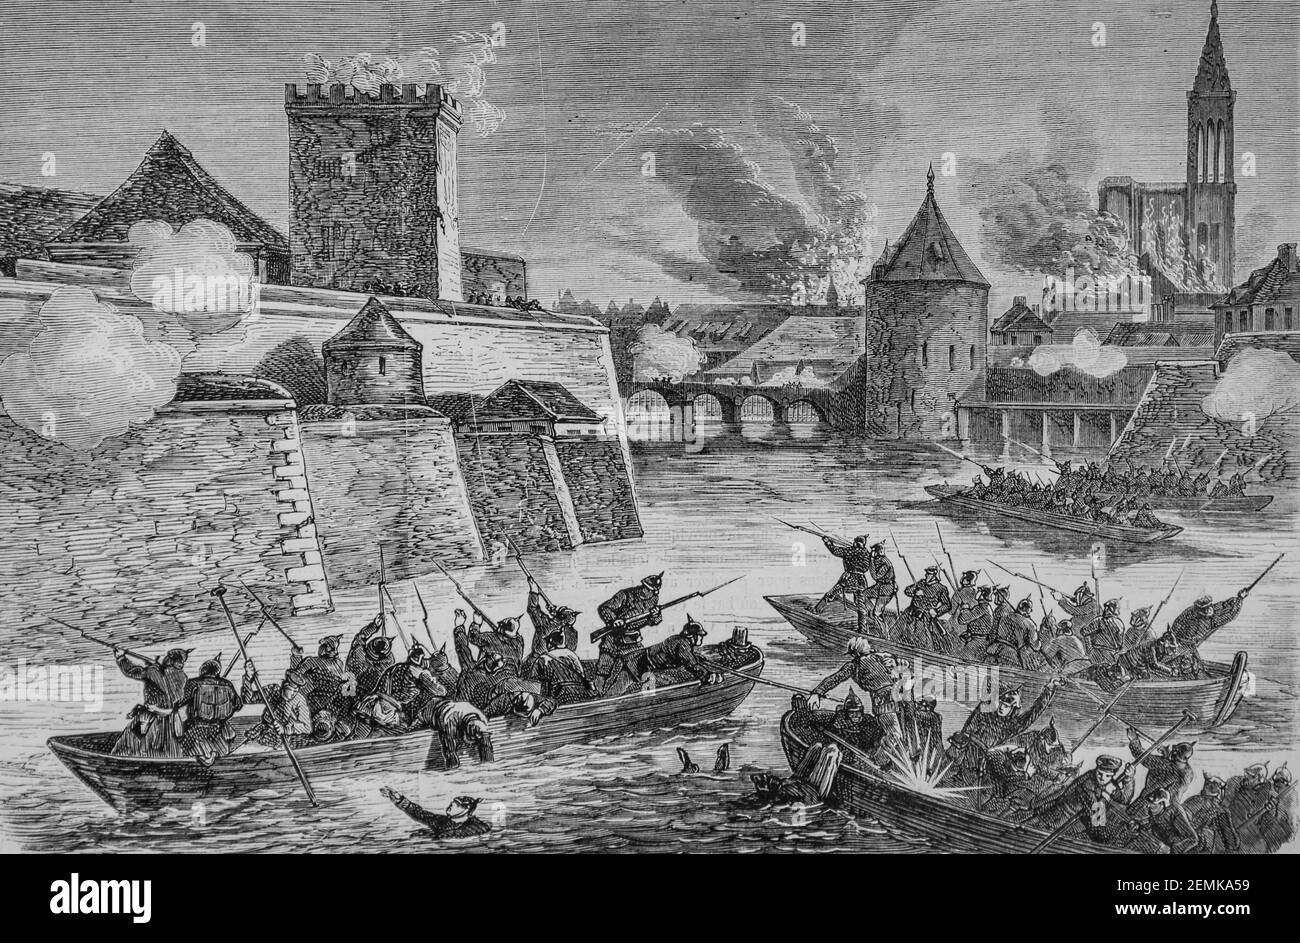 strasbourg,les defenseurs de la place detruisant un corps prussien au port des pecheurs, l'univers illustre,editeur michel levy 1870 Stock Photo